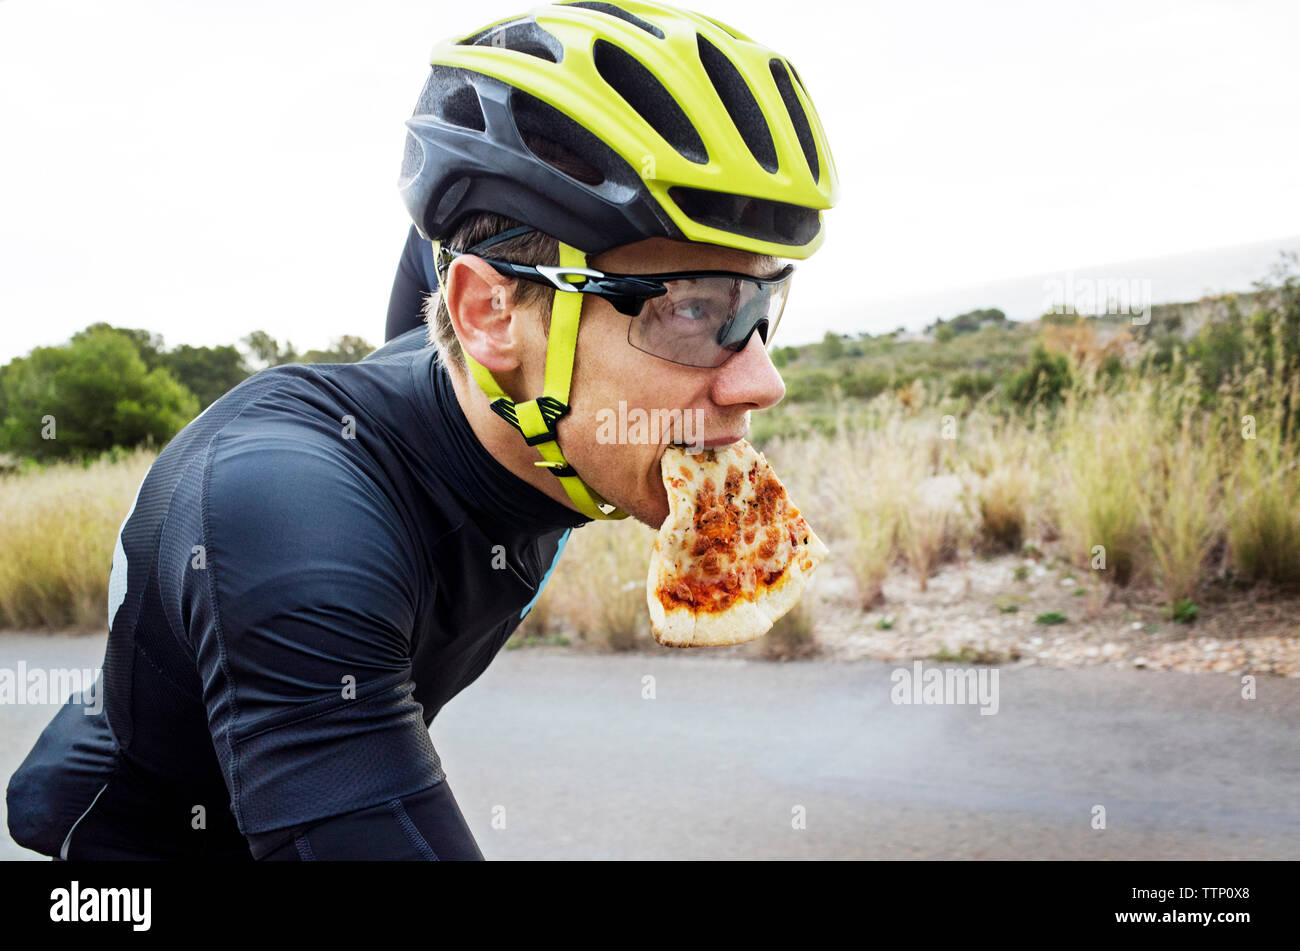 Man eating pizza tout en vélo sur la rue contre ciel clair Banque D'Images